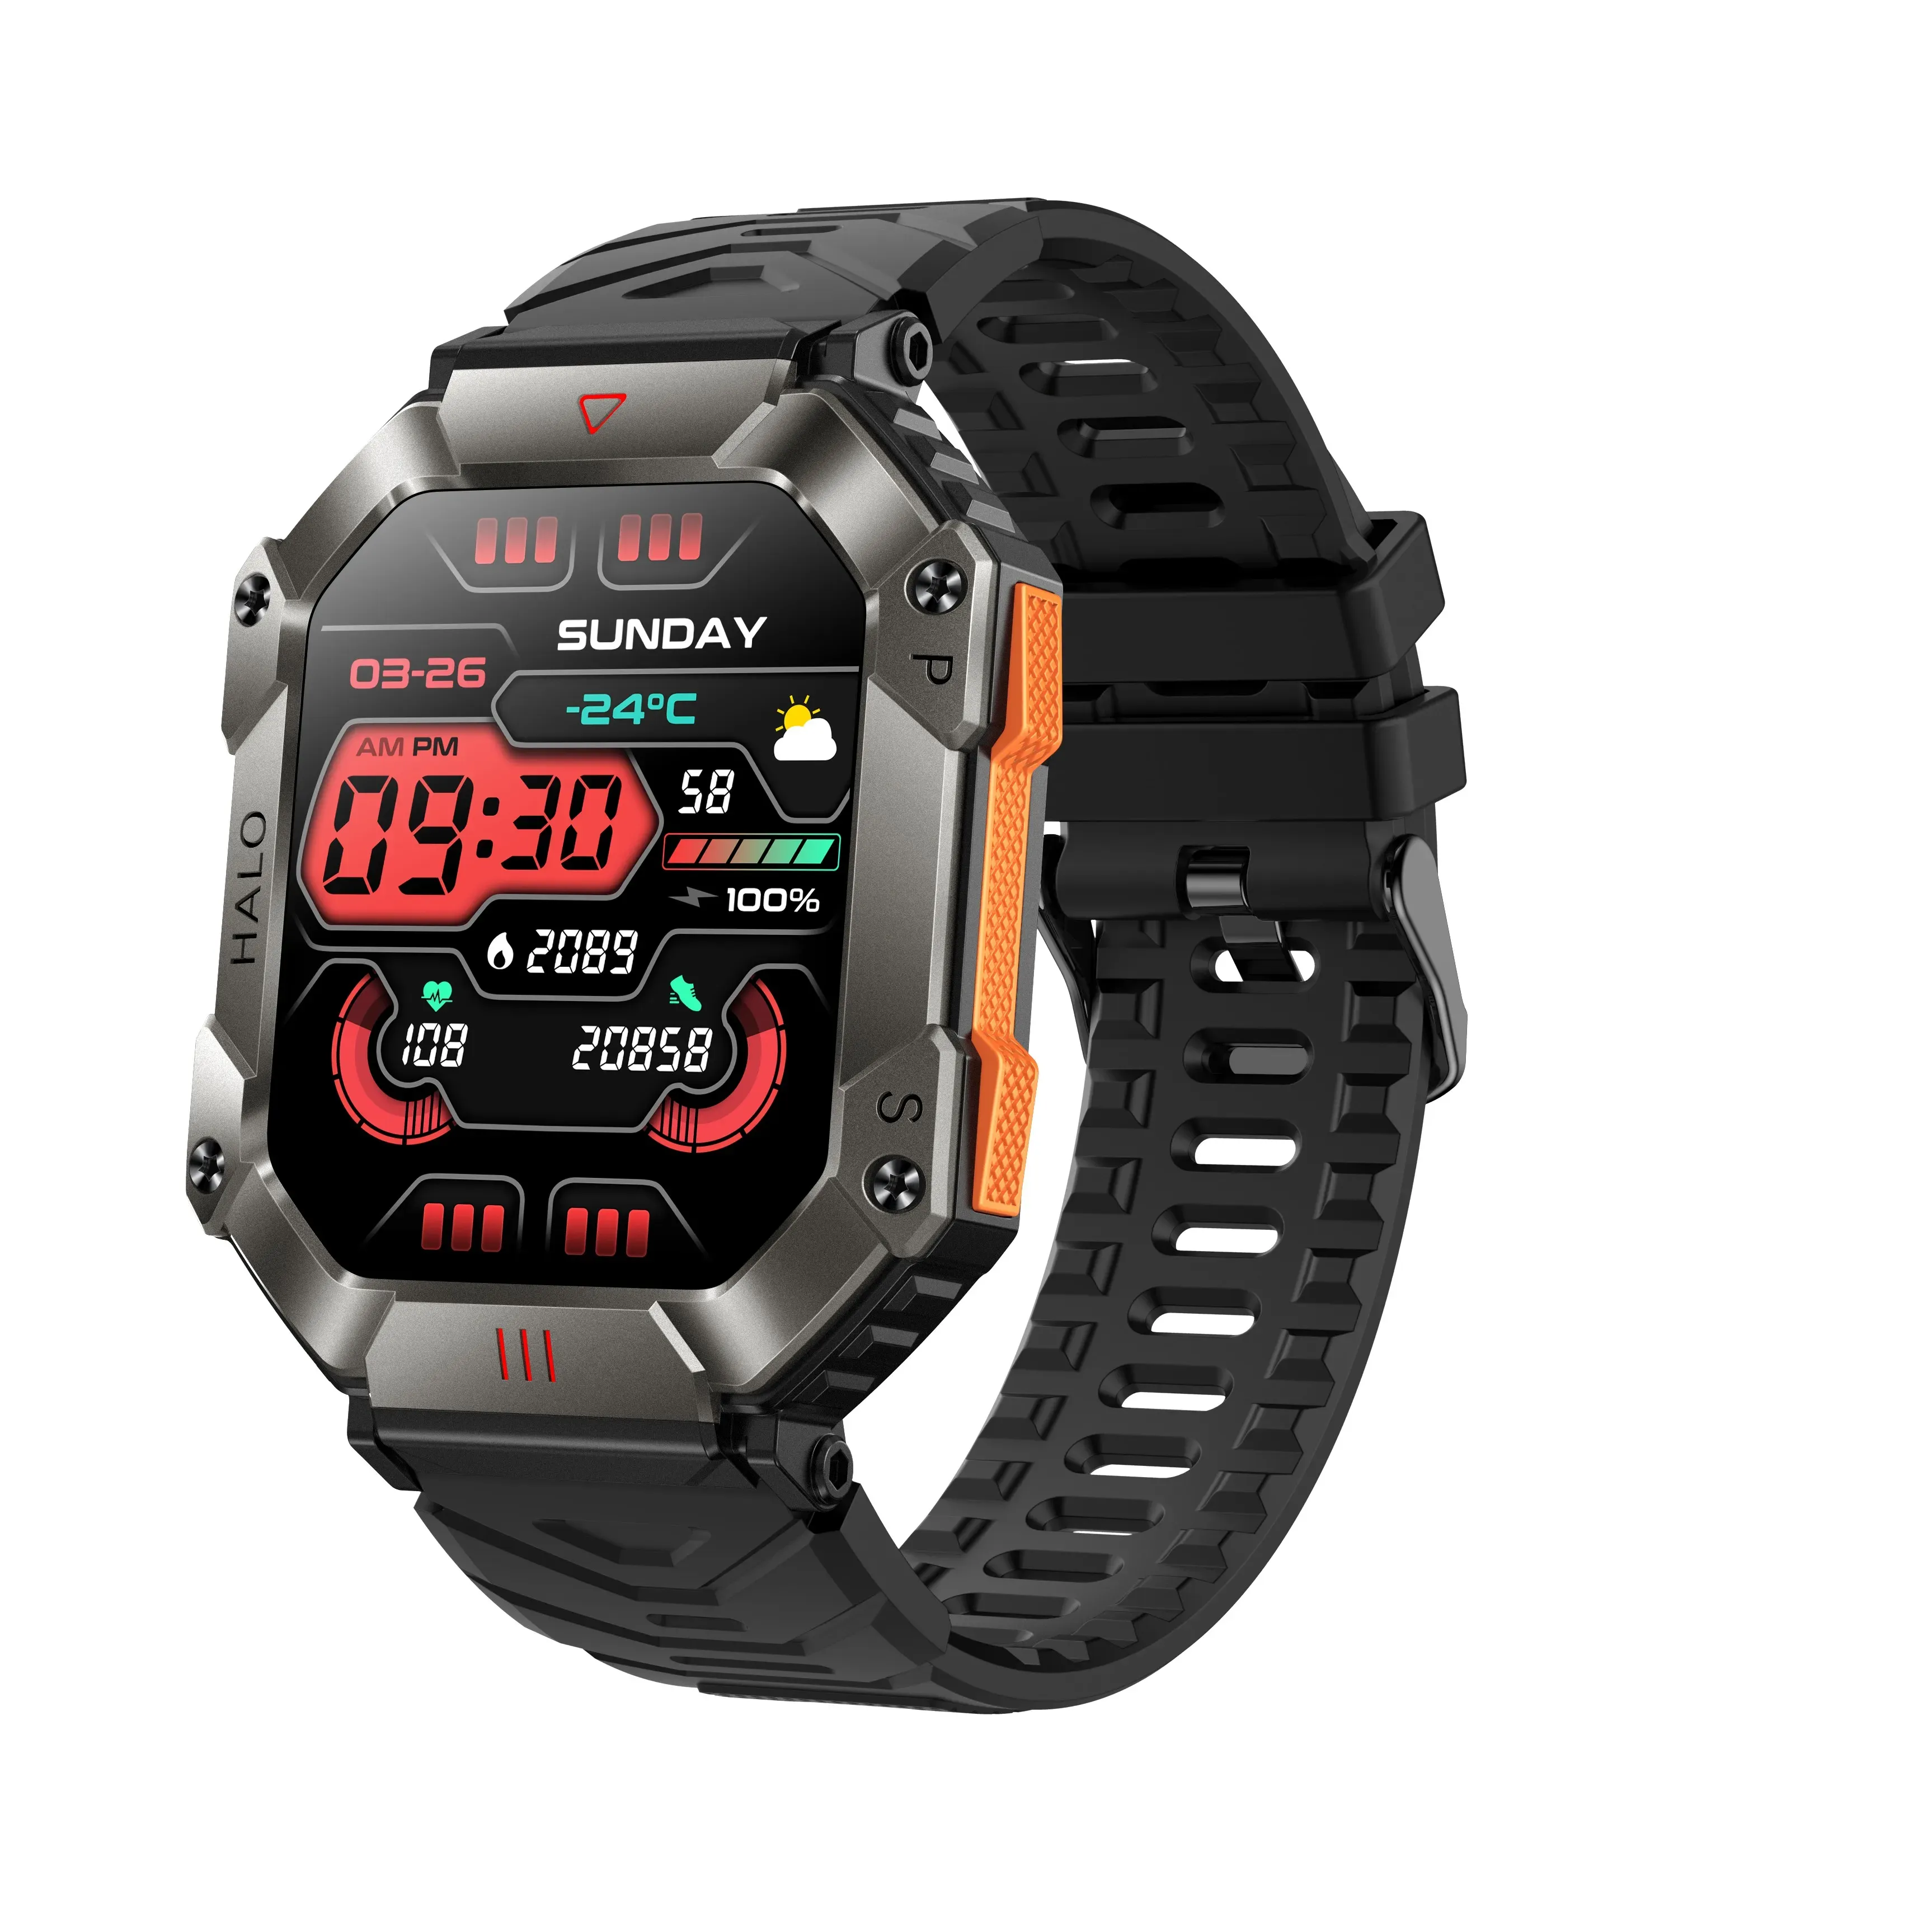 Zegarki KR80 Smart Watch 2,0 cala 240*292 Duży ekran BT Call IP67 Wodoodporny sporty na świeżym powietrzu Smartwatch na Android iOS